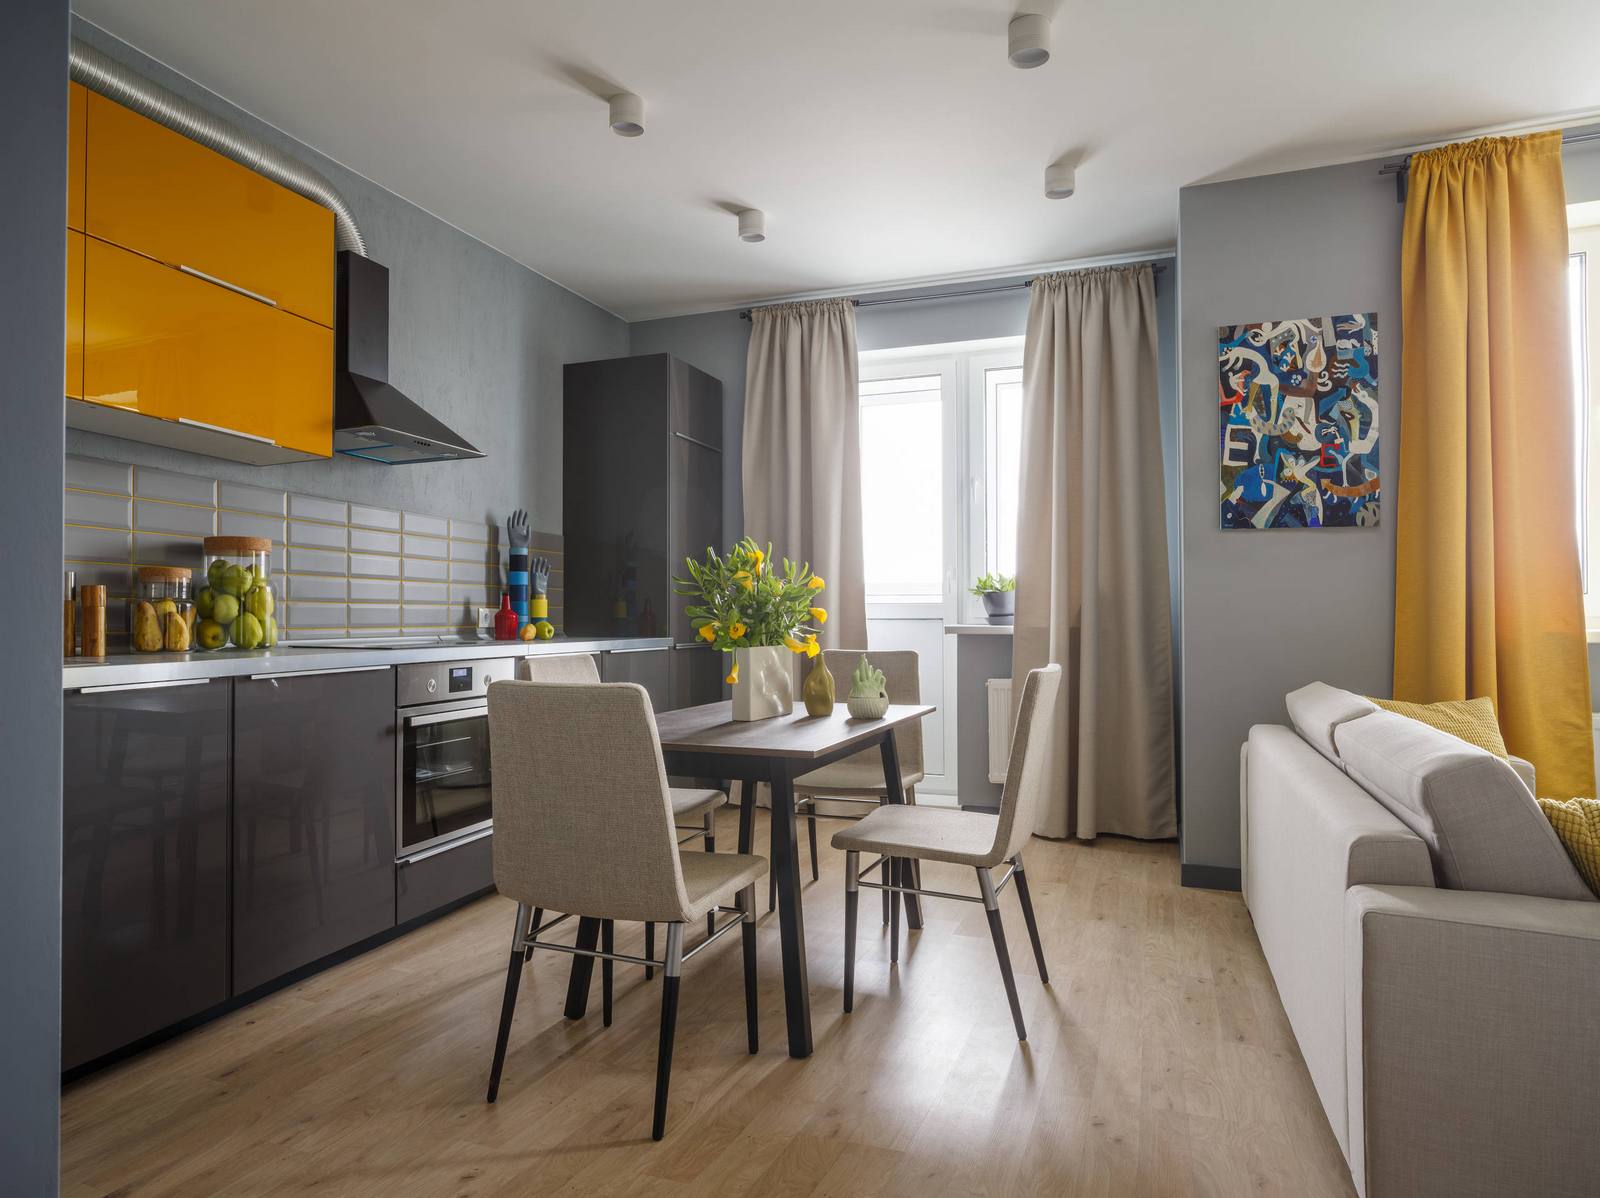 Fiatal pár egyszobás lakása egyszerű, praktikus, modern berendezéssel, 45m2 - szürke, sárga, kék színpaletta, polcos térelválasztó nappali és háló zóna között